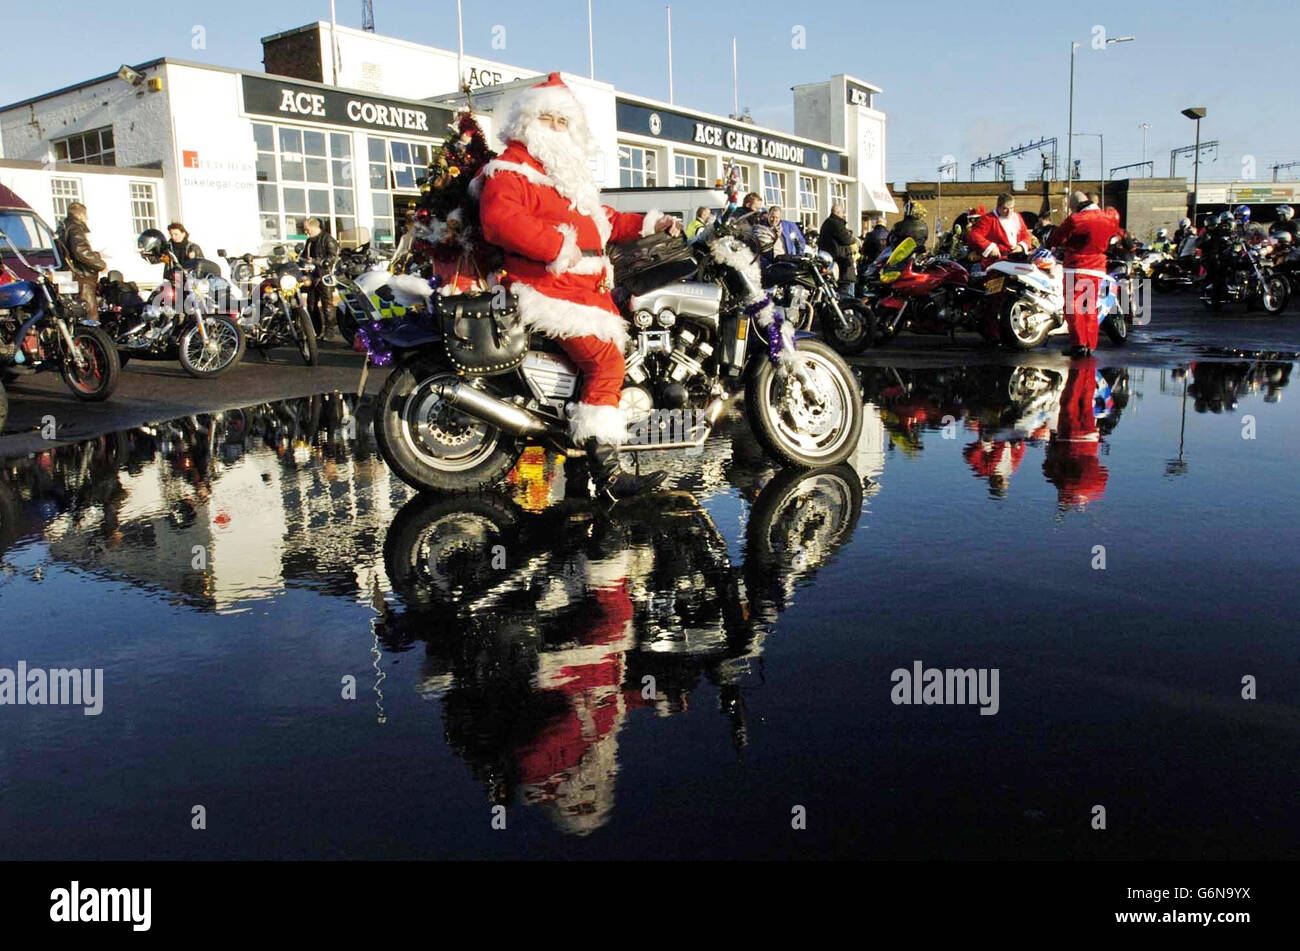 Un motard vêtu d'une tenue du Père Noël se joint à plus d'une centaine de motocyclistes au Ace Cafe, Brant, dans le nord de Londres, pour livrer des cadeaux de Noël aux enfants de l'hôpital Central Middlesex, de l'hôpital St Mary et de l'hôpital St Thomas. Banque D'Images